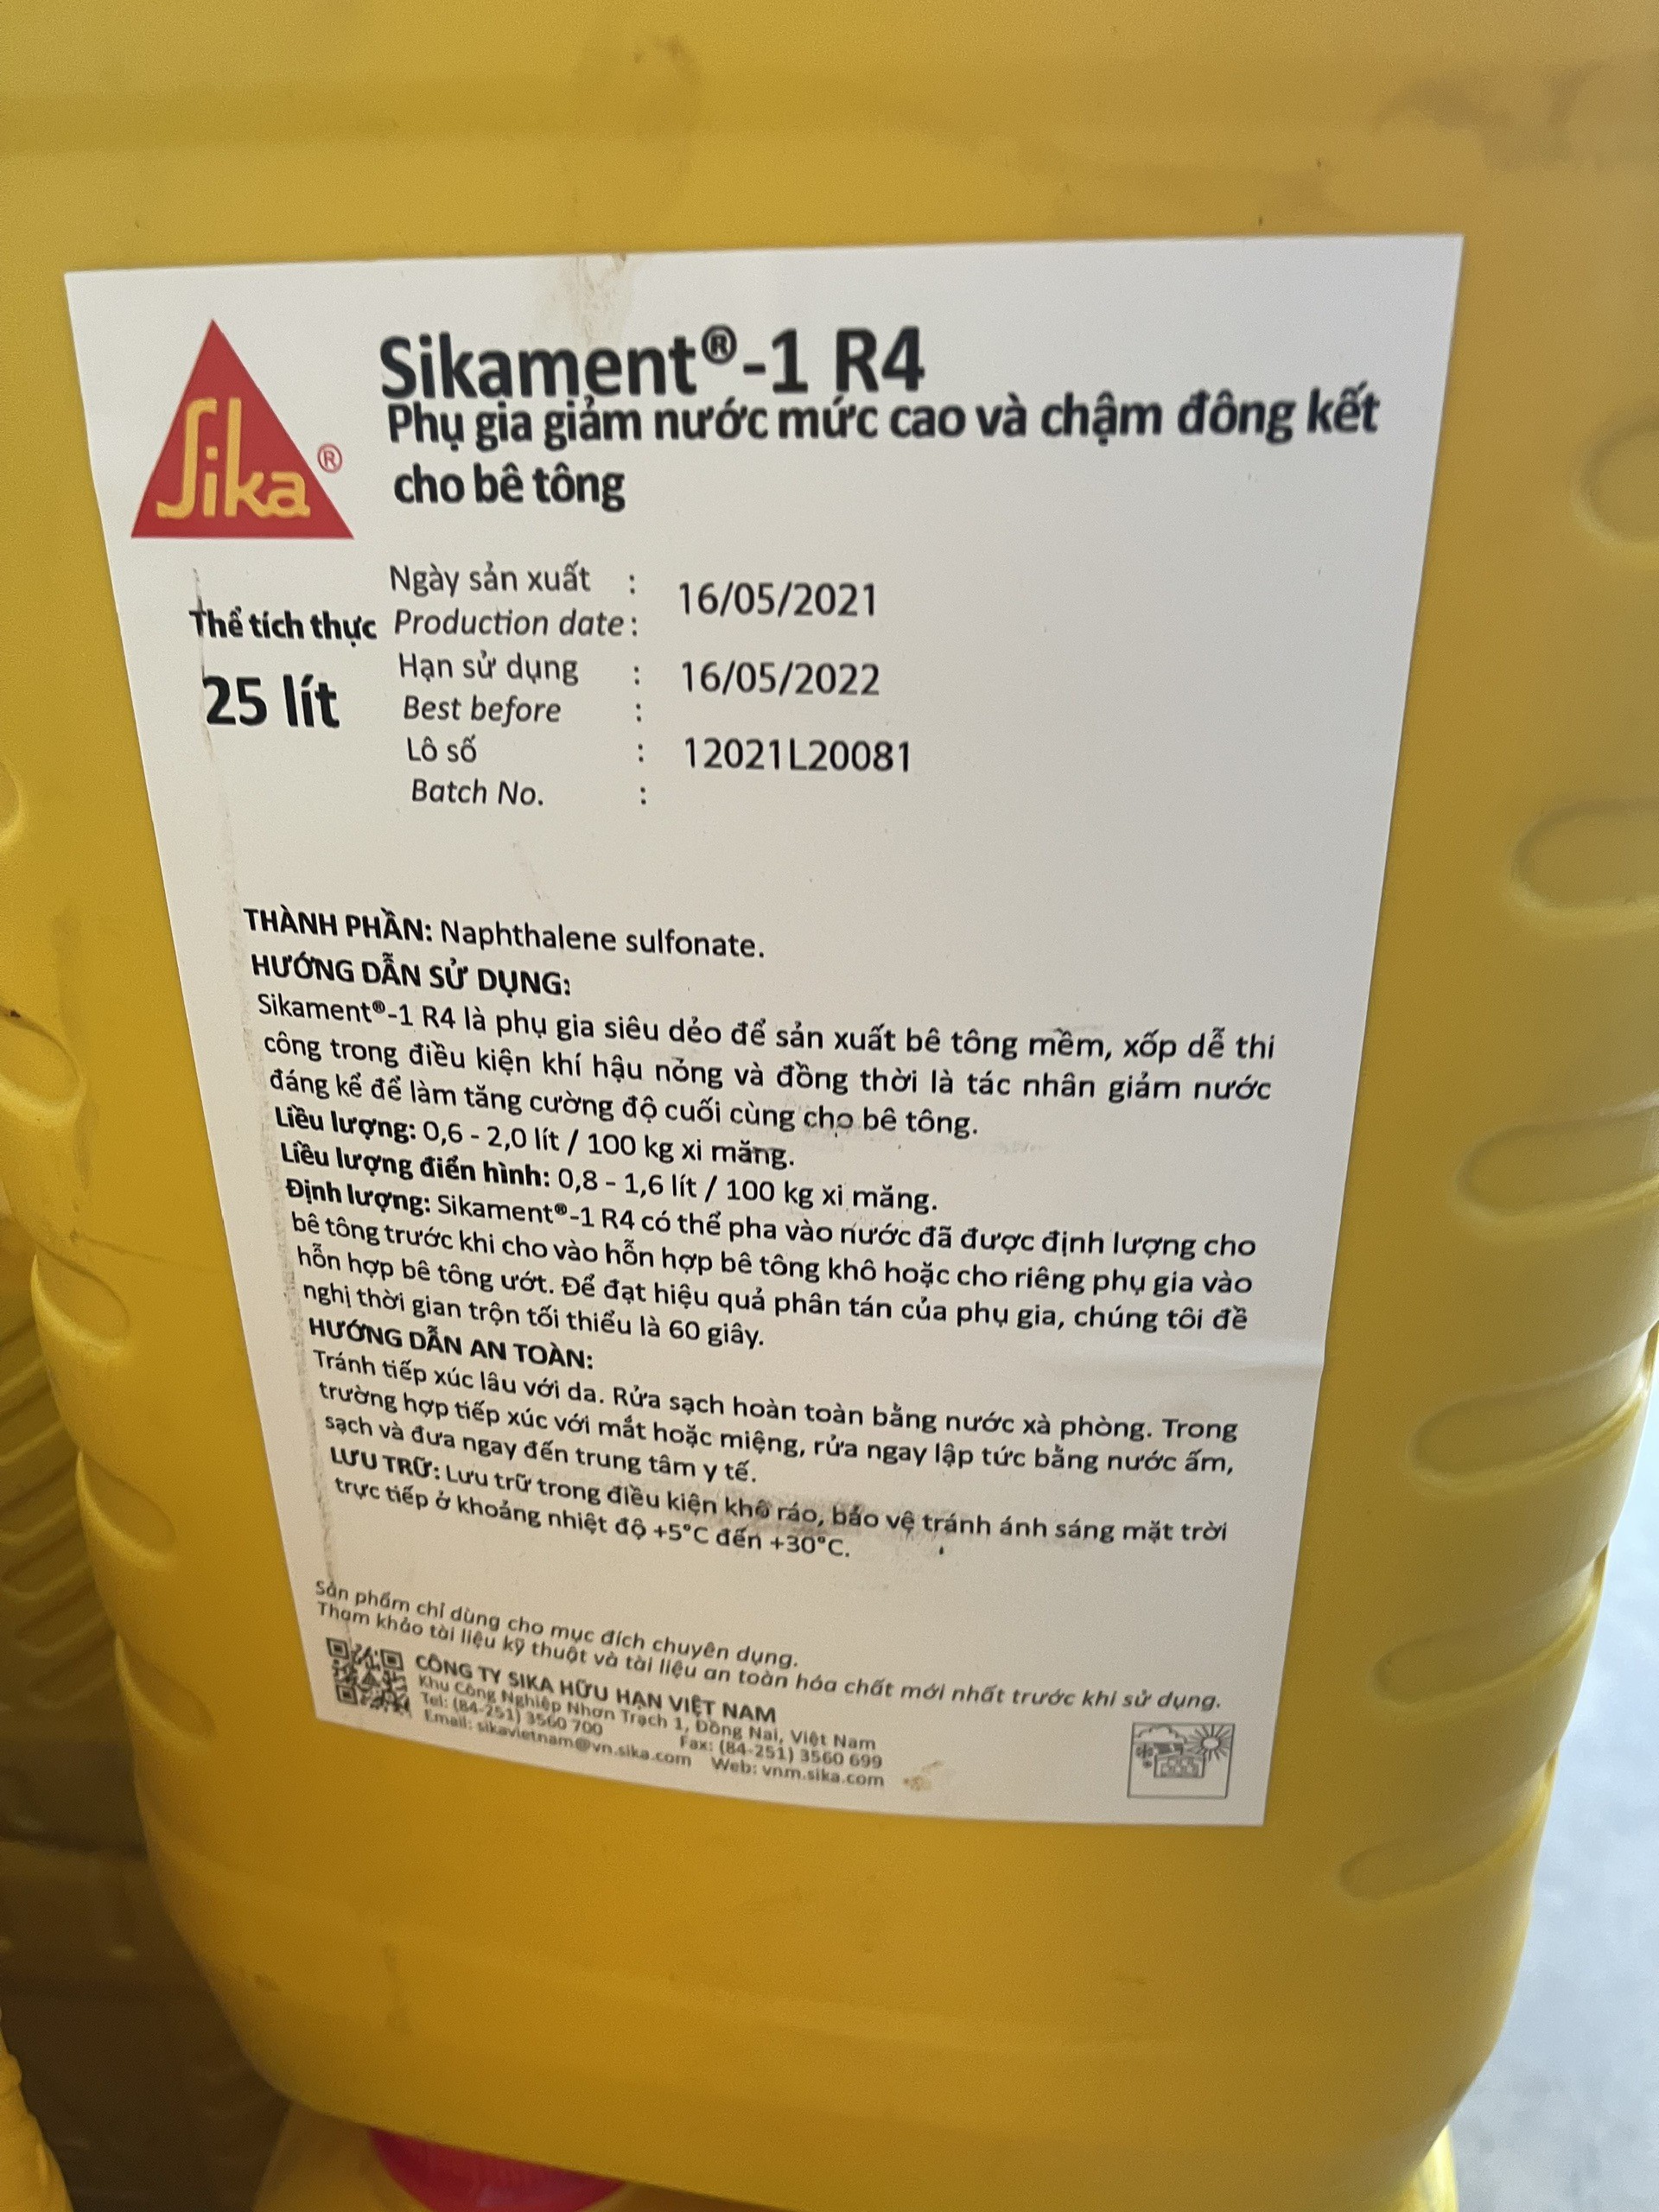 
Sikament R4 là chất phụ gia có hiệu quả cao trong việc kéo dài thời gian ninh kết bê tông
